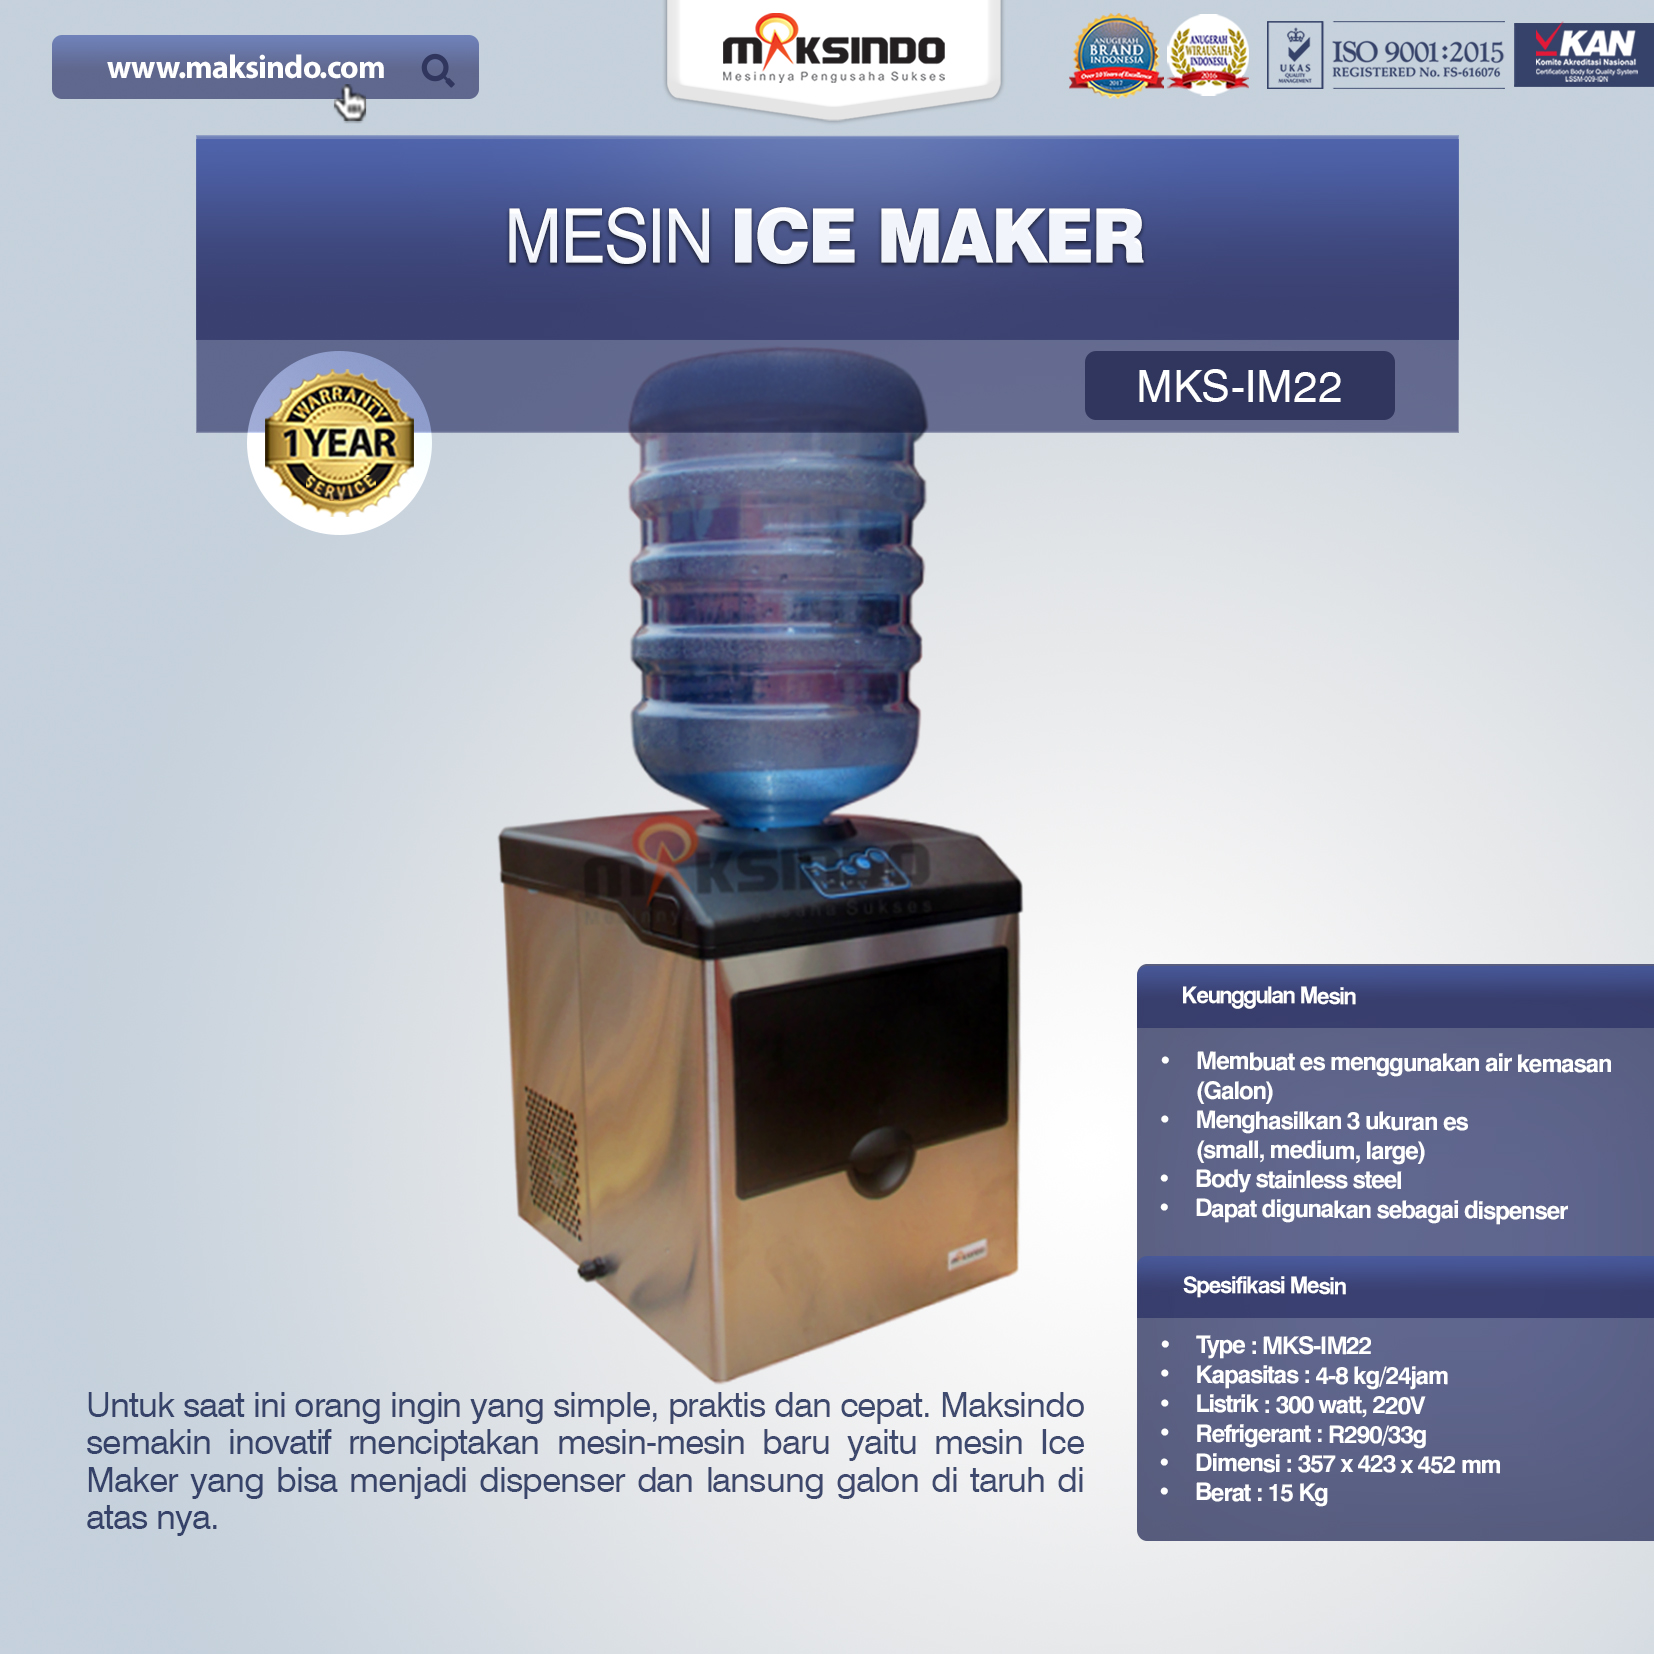 Jual Mesin Ice Maker MKS-IM22 di Blitar